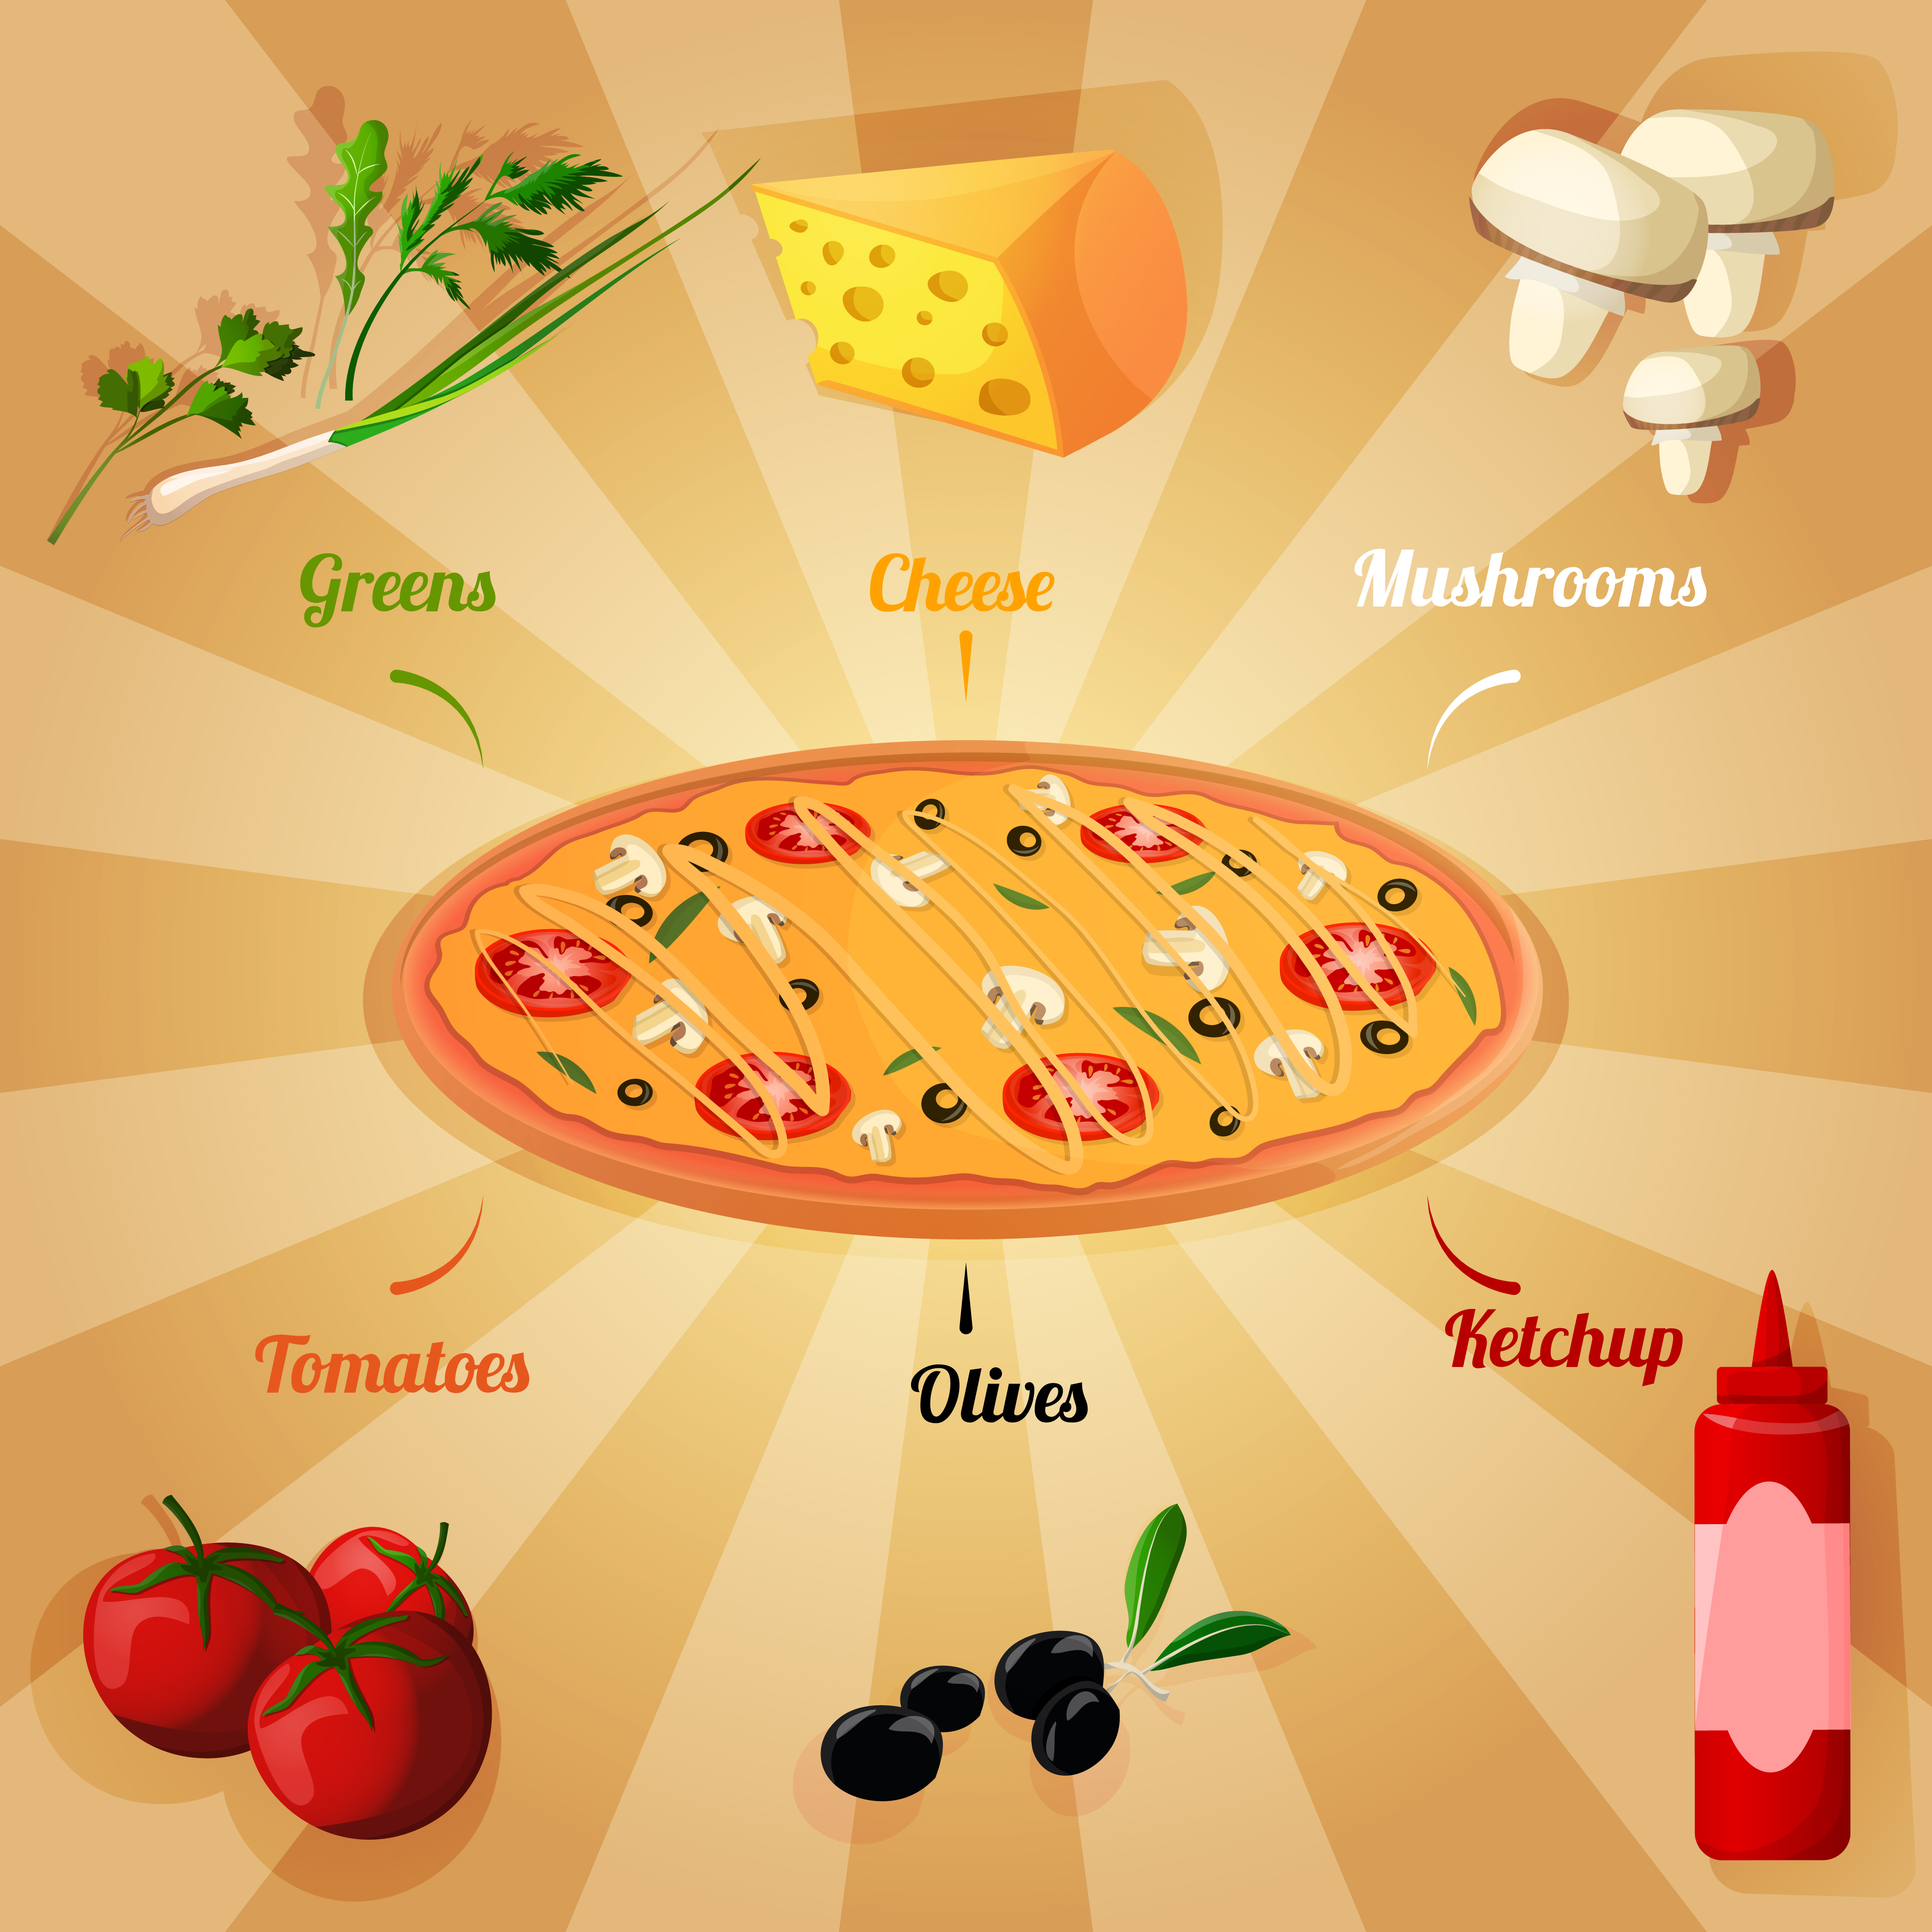 рецепт приготовления пиццы на английском языке 4 класс фото 10